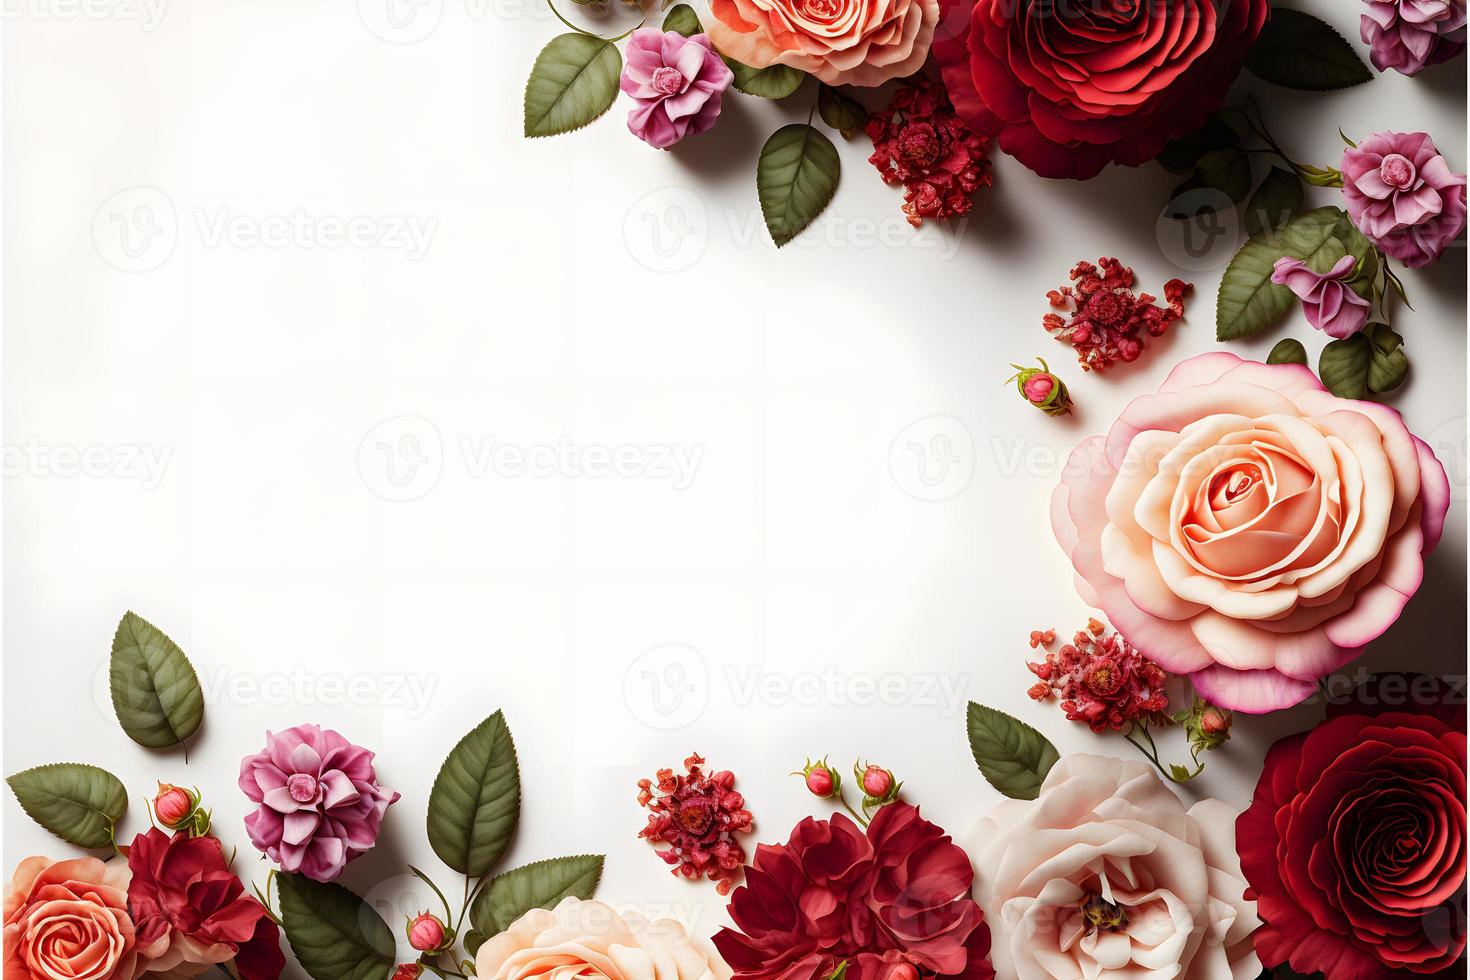 en fantastisk bild terar en röd och rosa reste sig blomma med en tom Plats i de mitten, perfekt för tillsats text eller överlägg grafik. detta Foto är idealisk för använda sig av på social media, webbplatser